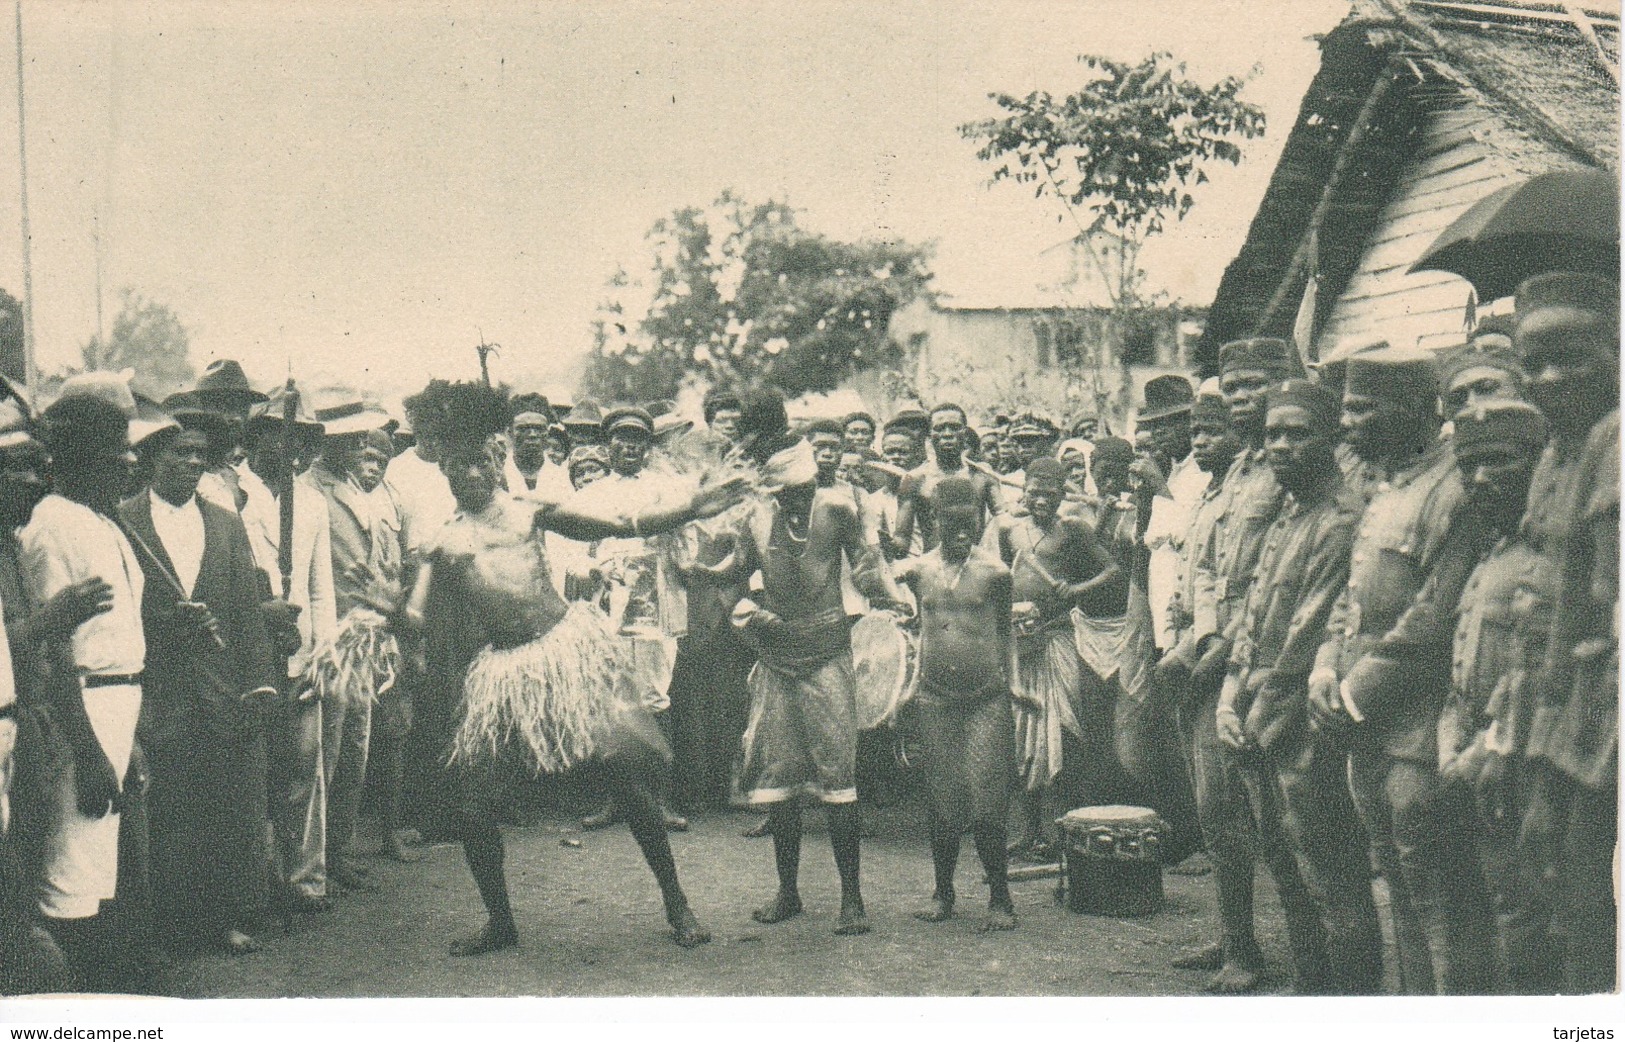 POSTAL DE GUINEA ESPAÑOLA DE ESAMBIRAS EN SU BAILE TIPICO (PUBLICACIONES PATRIOTICAS) EXPO IBERO-AMERICANA SEVILLA 1929 - Guinea Ecuatorial